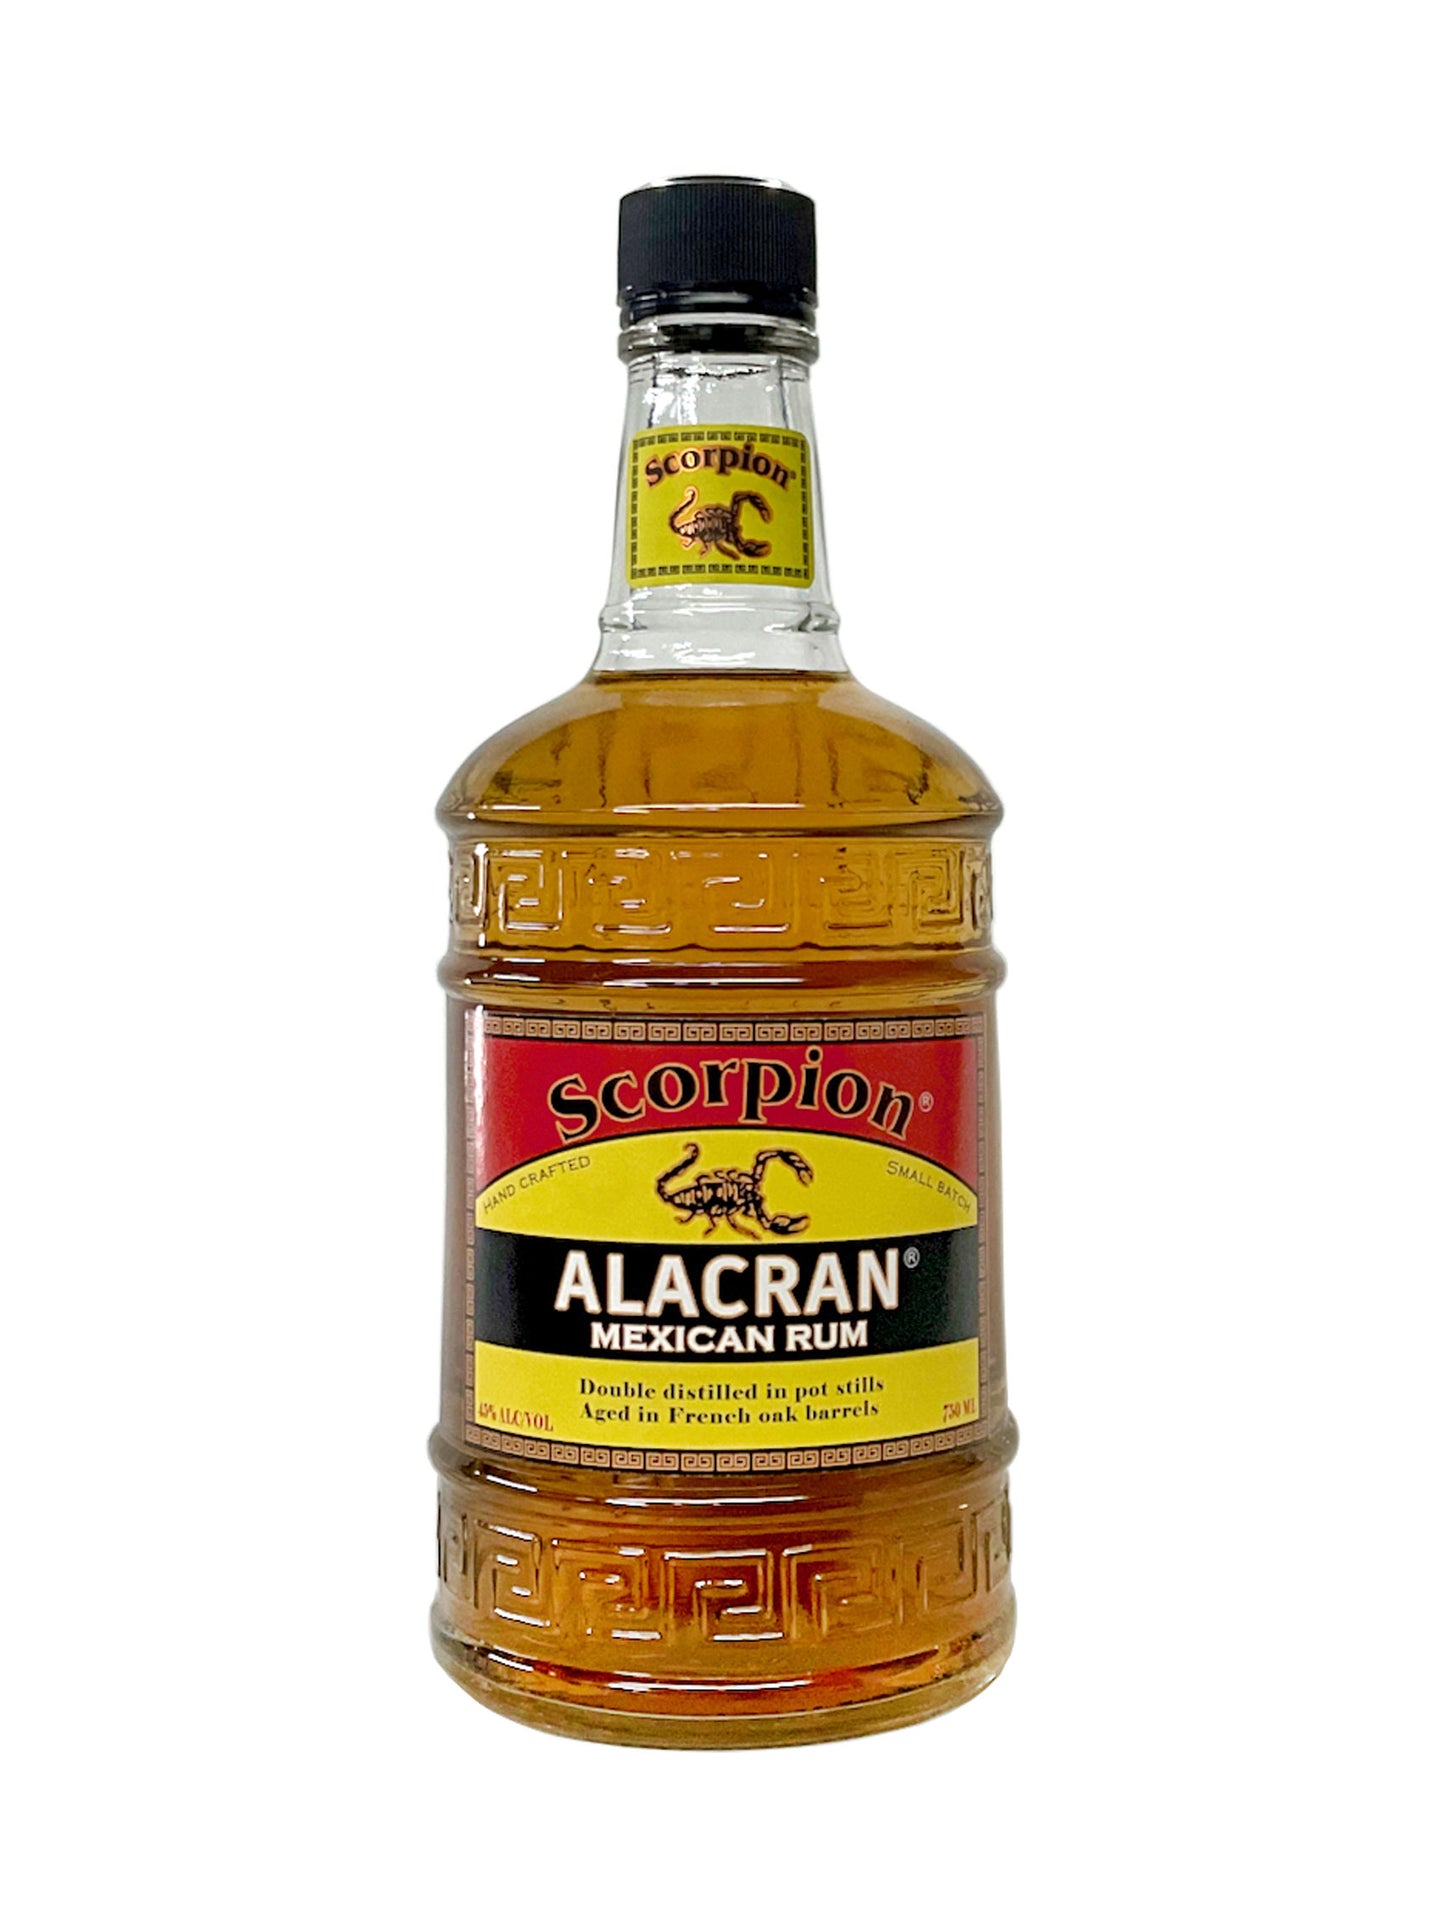 Scorpion ALACRAN Rum 750mL